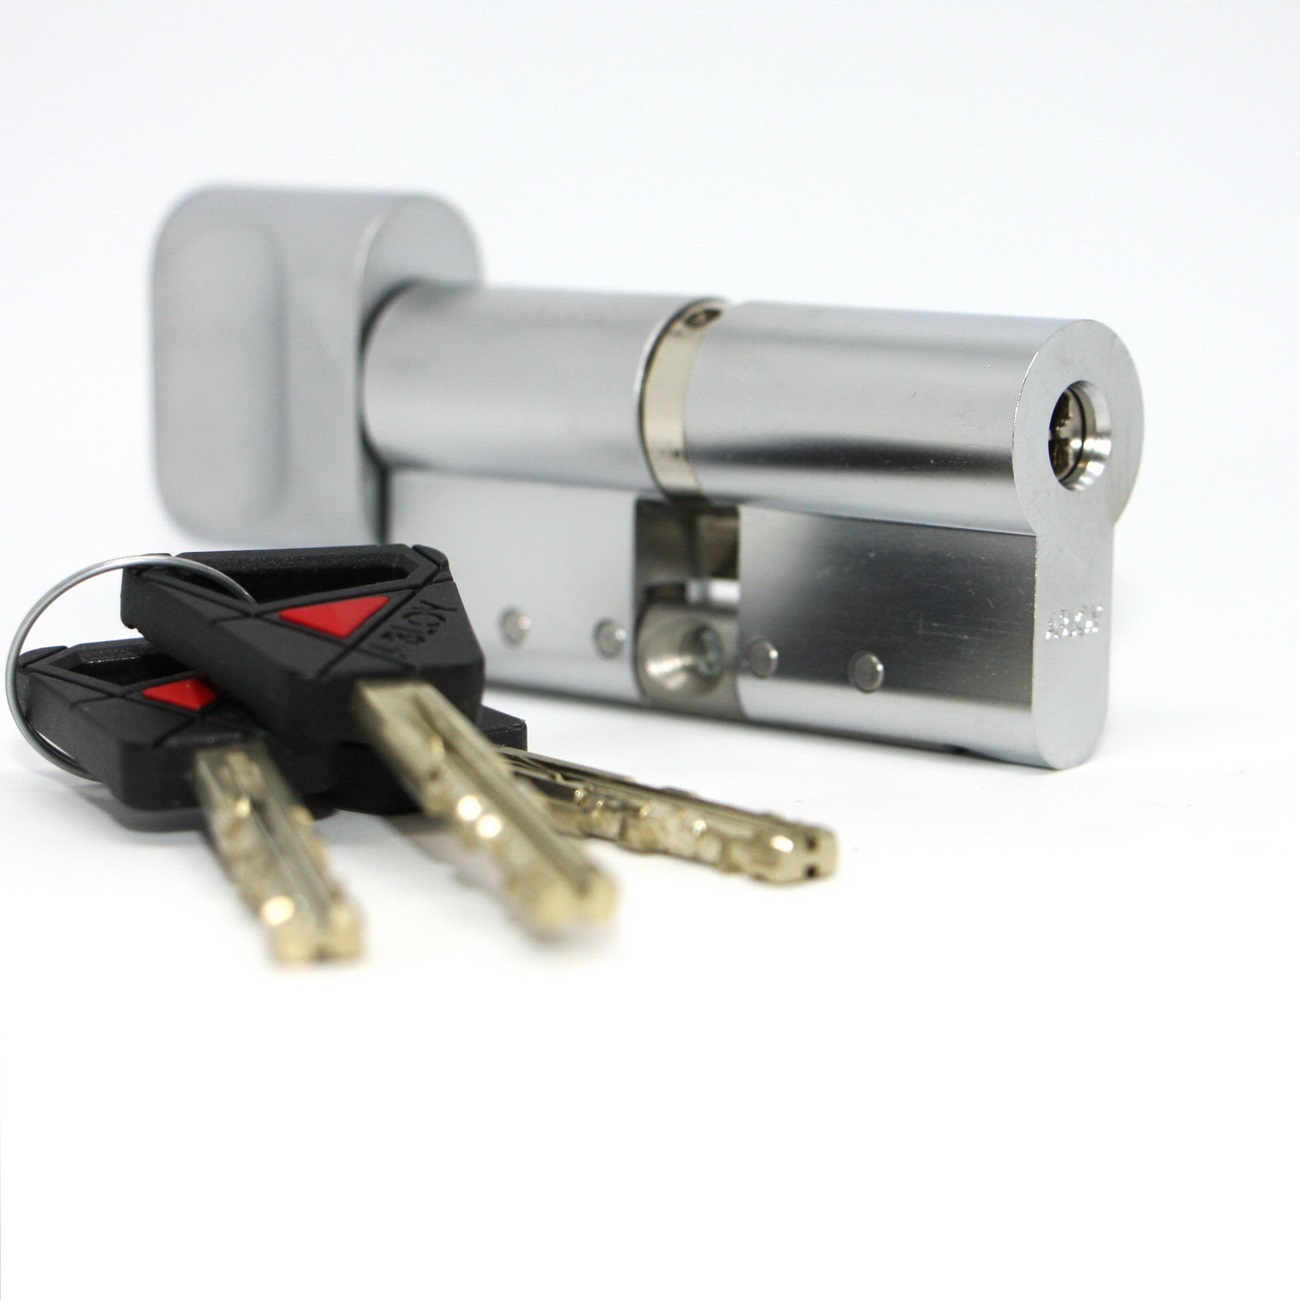 CY 323 U  chrome satin/ цилиндр ключ+поворотная кнопка от производителя Аблой